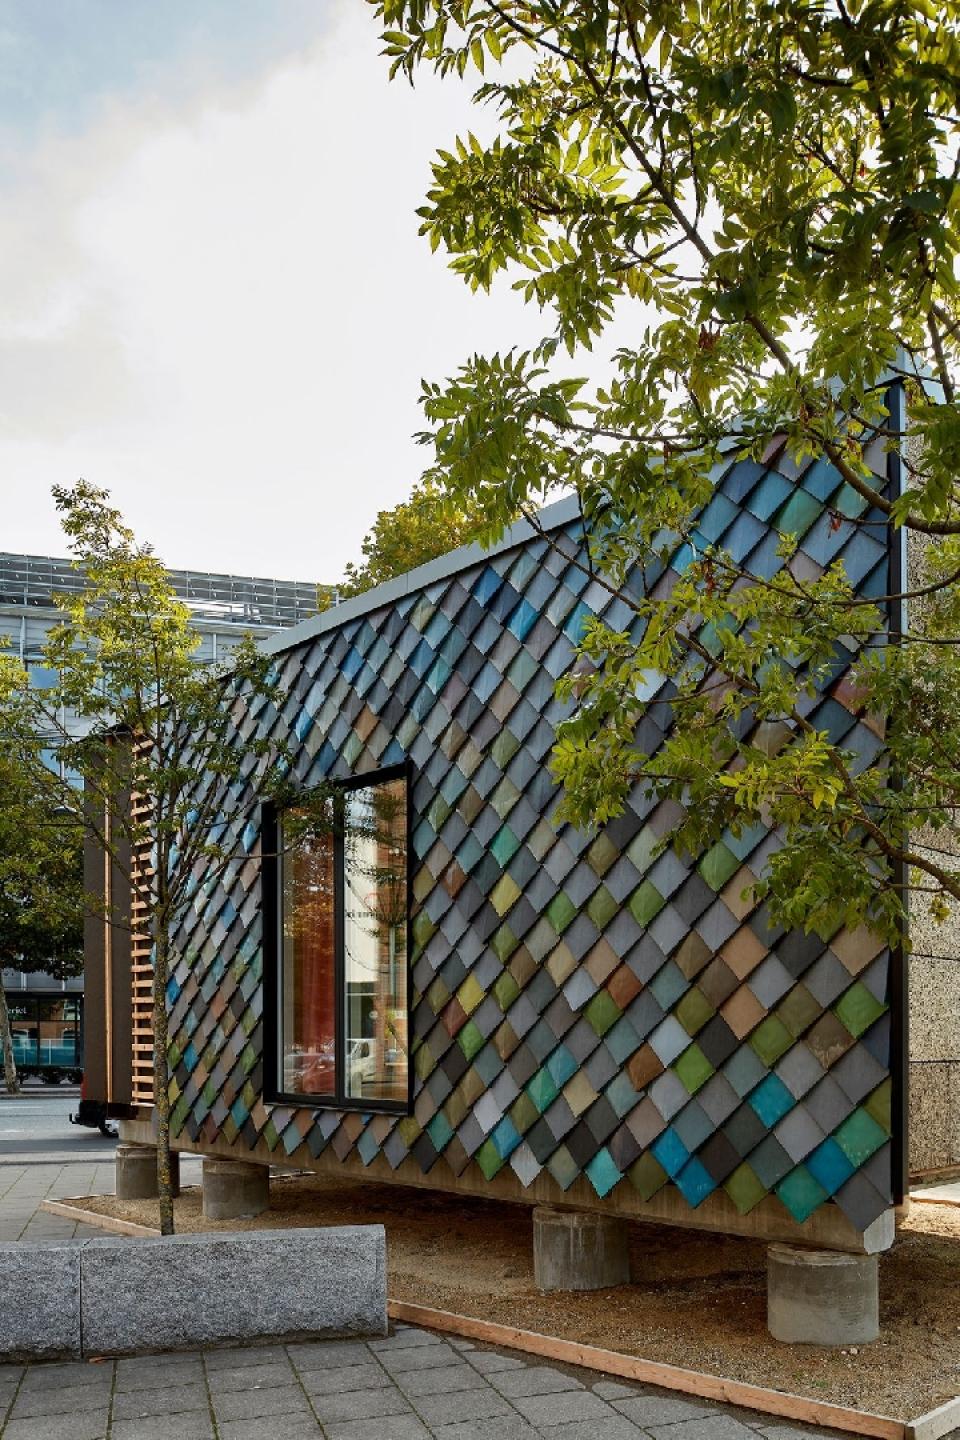 GXN, der også er med, er specialiseret i at udvikle og implementere grønne og innovative løsninger inden for arkitektur og design - og står blandt andet bag Circle House. Foto: Tom Jersø.